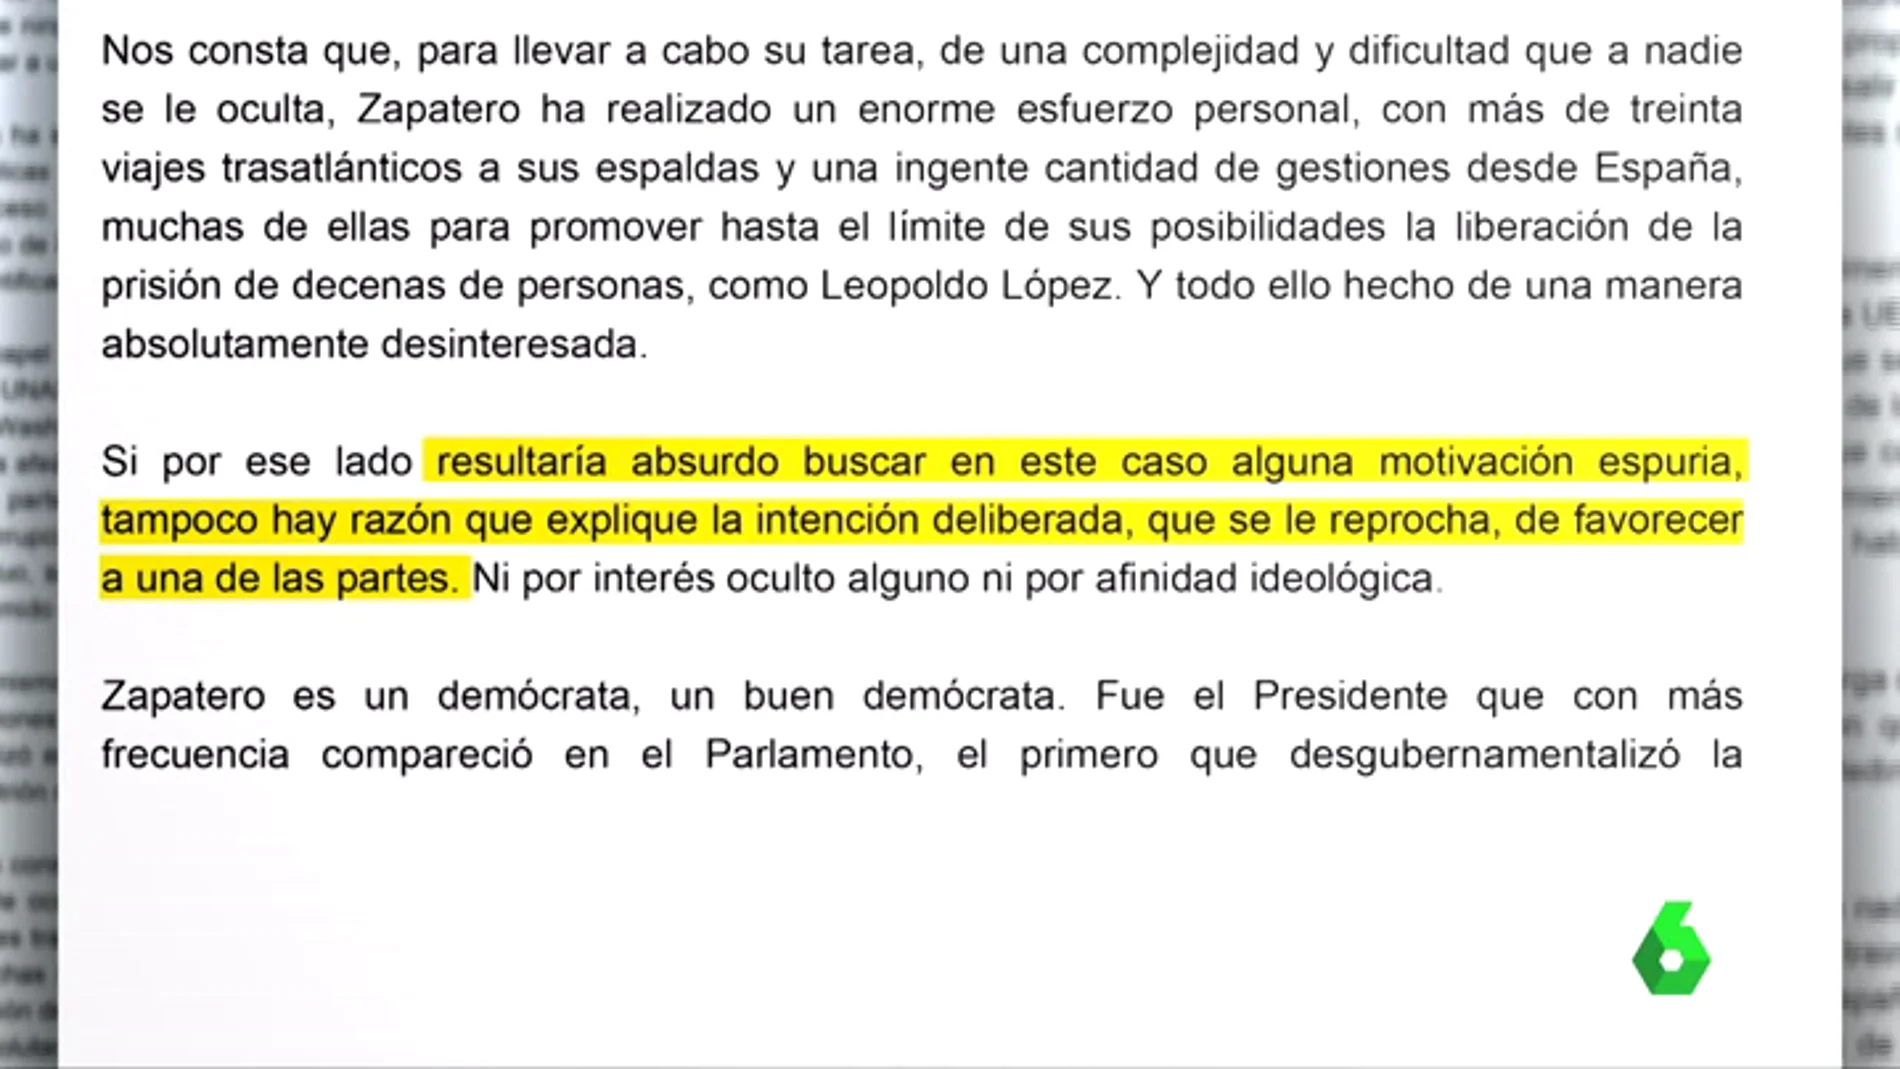 Una parte del manifiesto en defensa de la labor de Zapatero en Venezuela